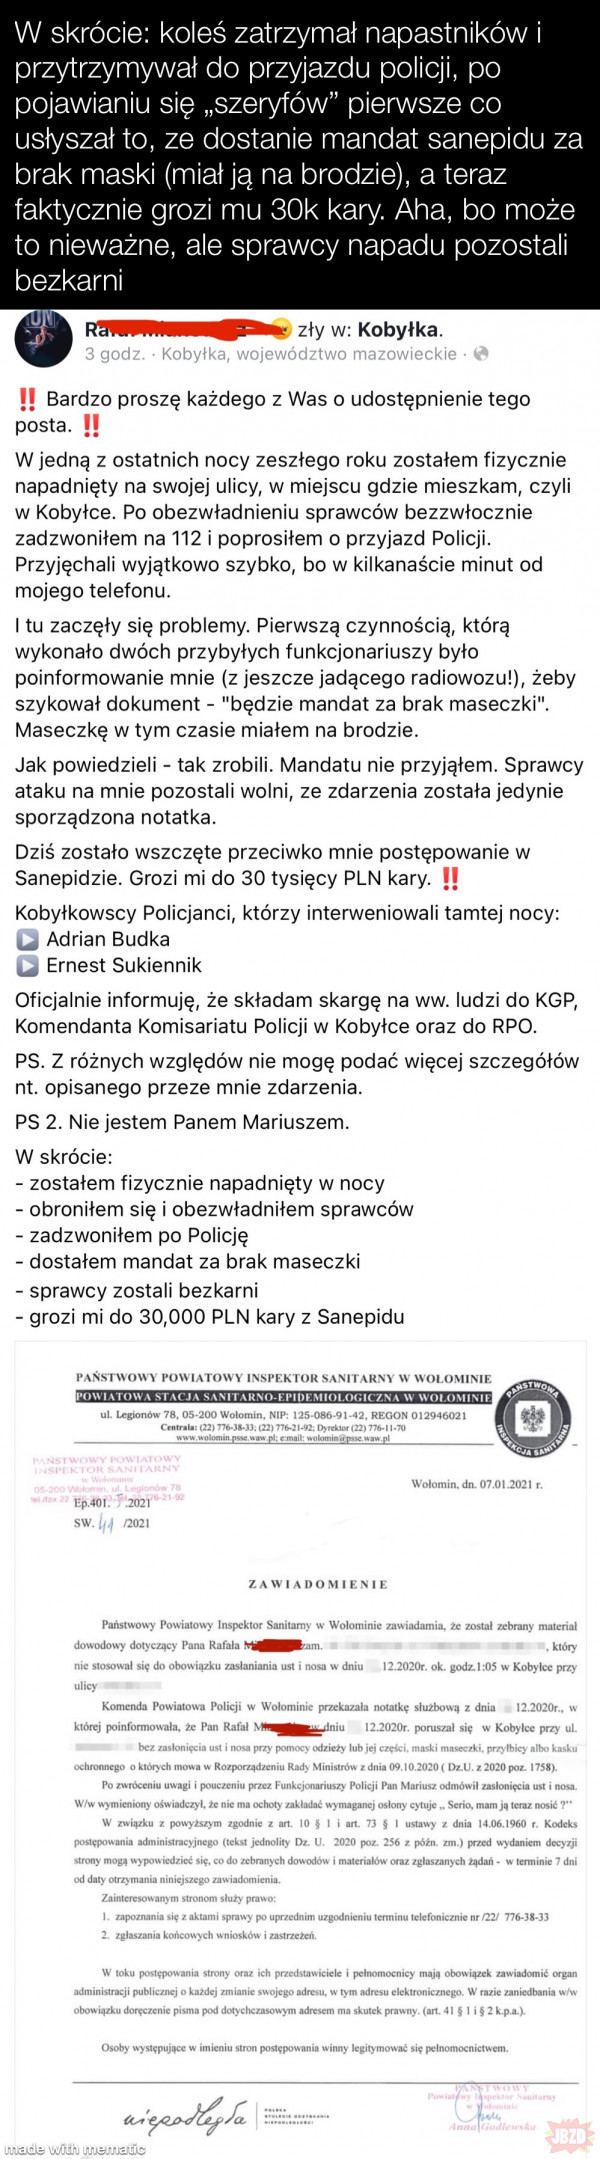 Polska policja - poziom zaufania na poziomie milicji albo ZOMO, gratulujemy!